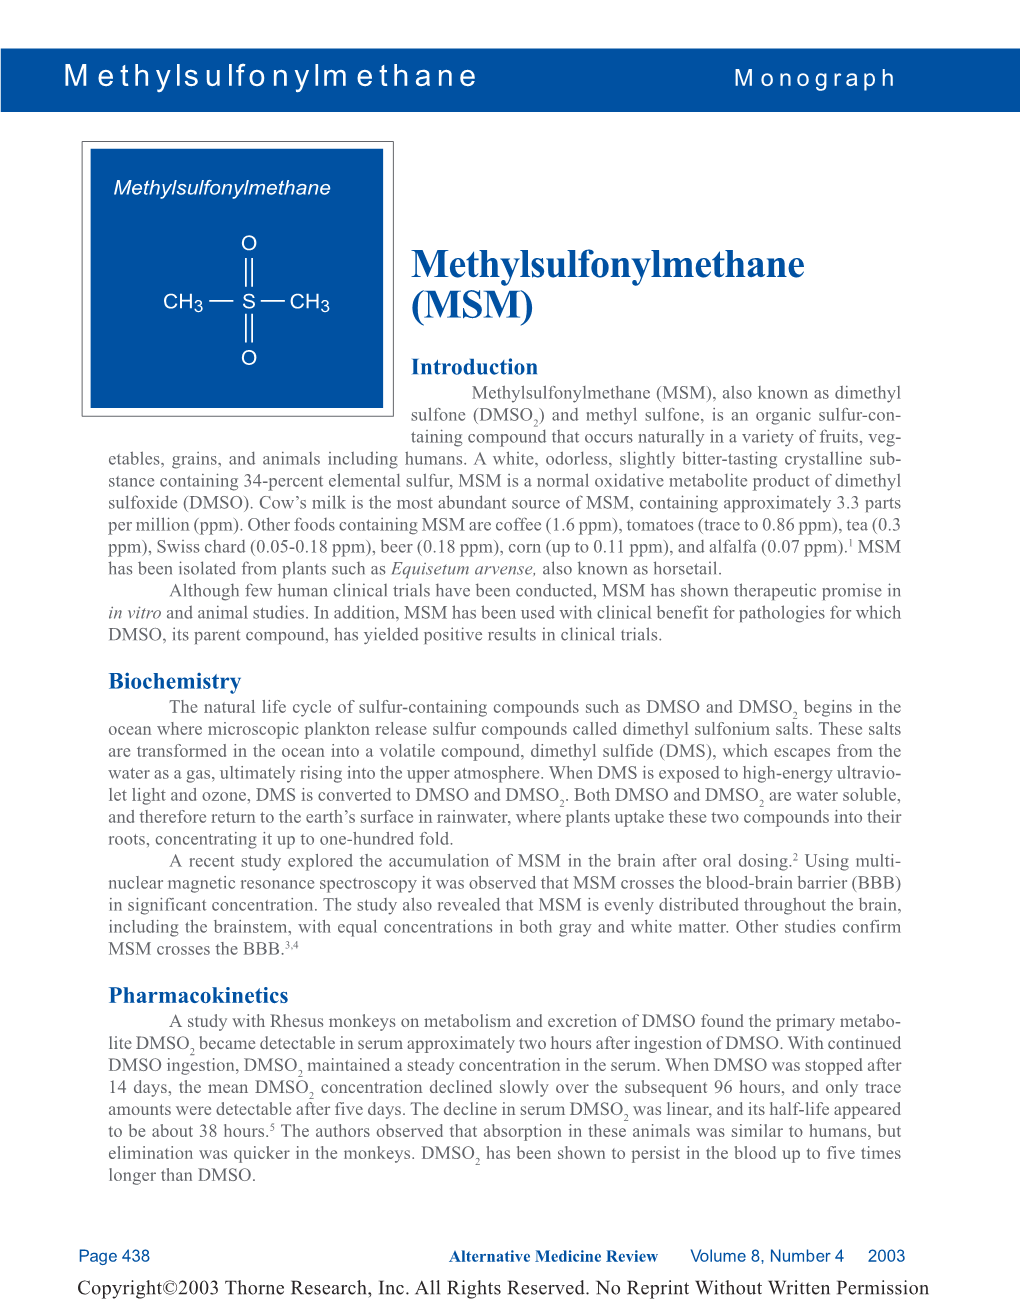 Methylsulfonylmethane (MSM) Monograph